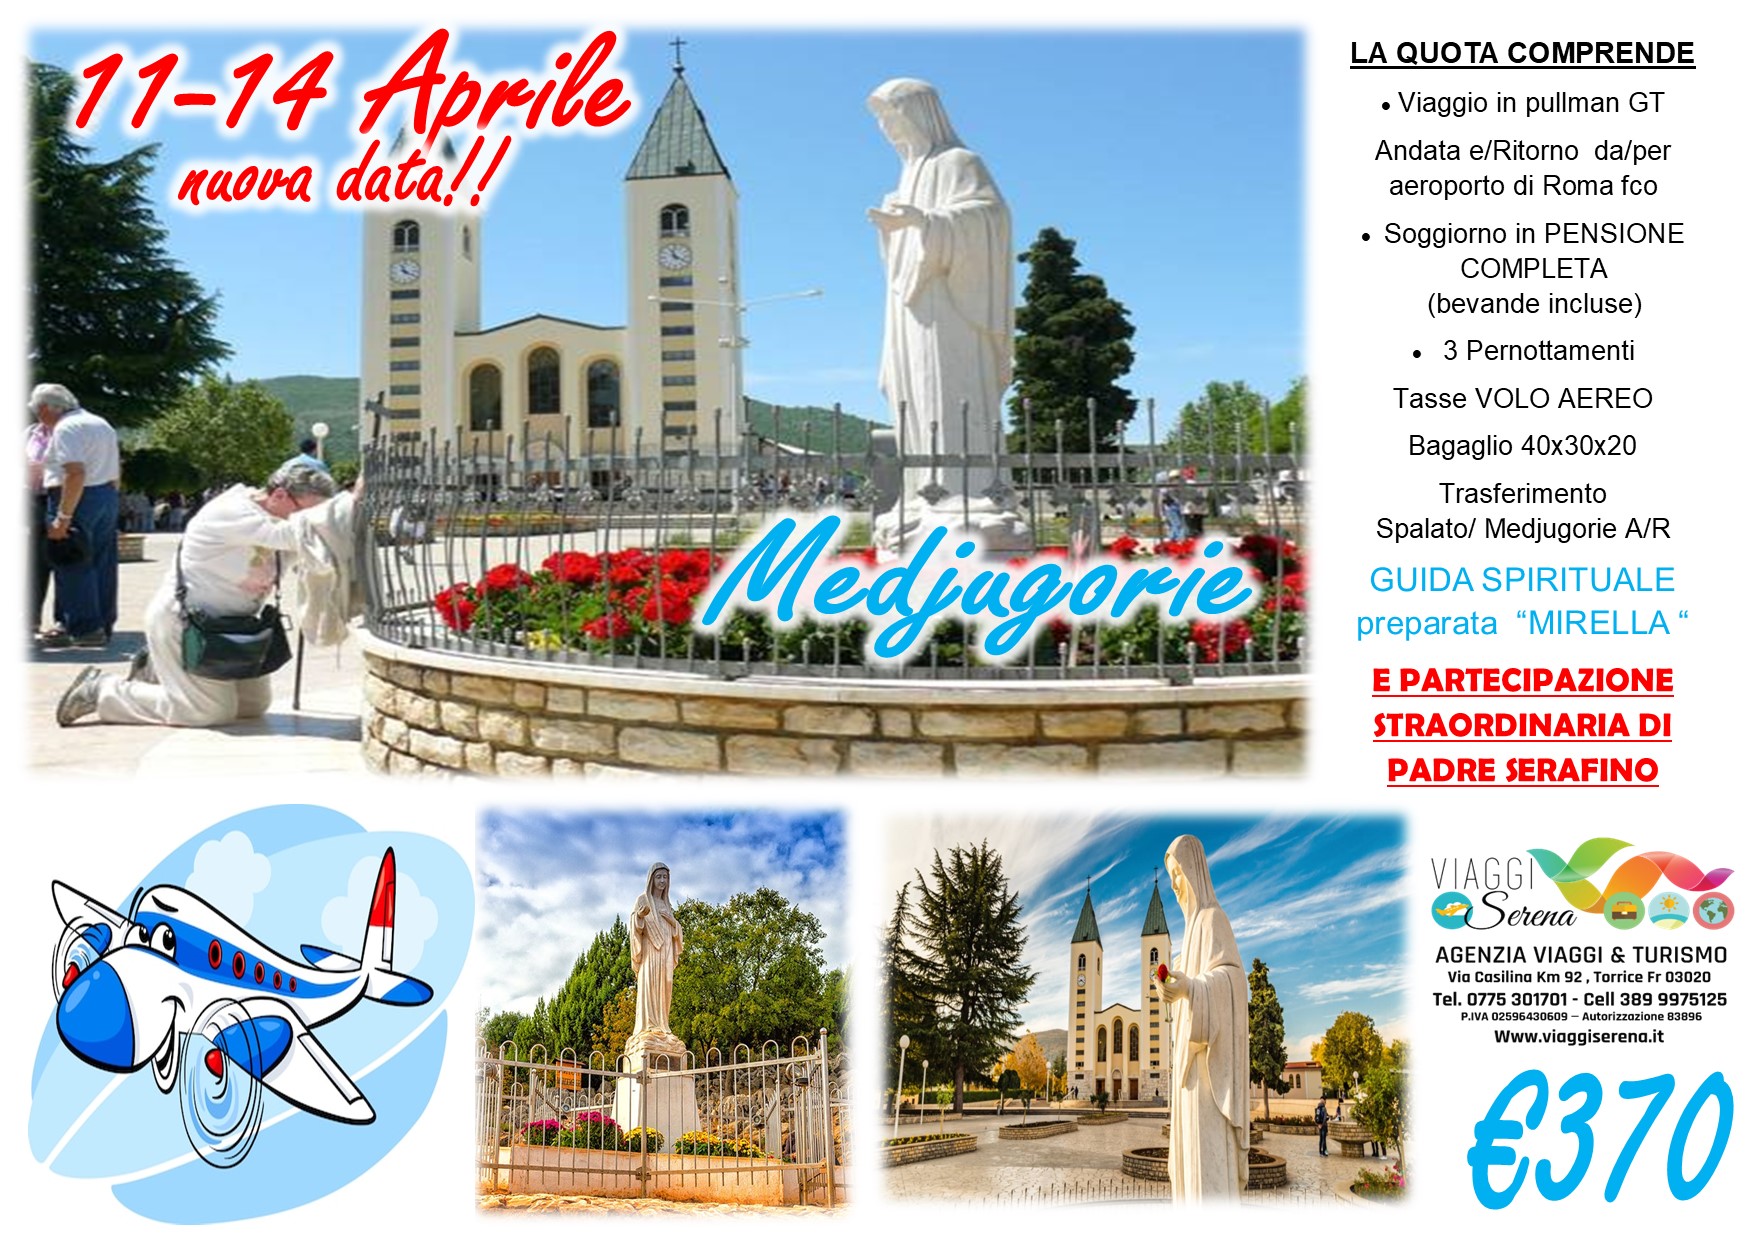 Viaggi di Gruppo: Pellegrinaggio Medjugorie” con VOLO 11-12-13-14 Aprile € 370,00